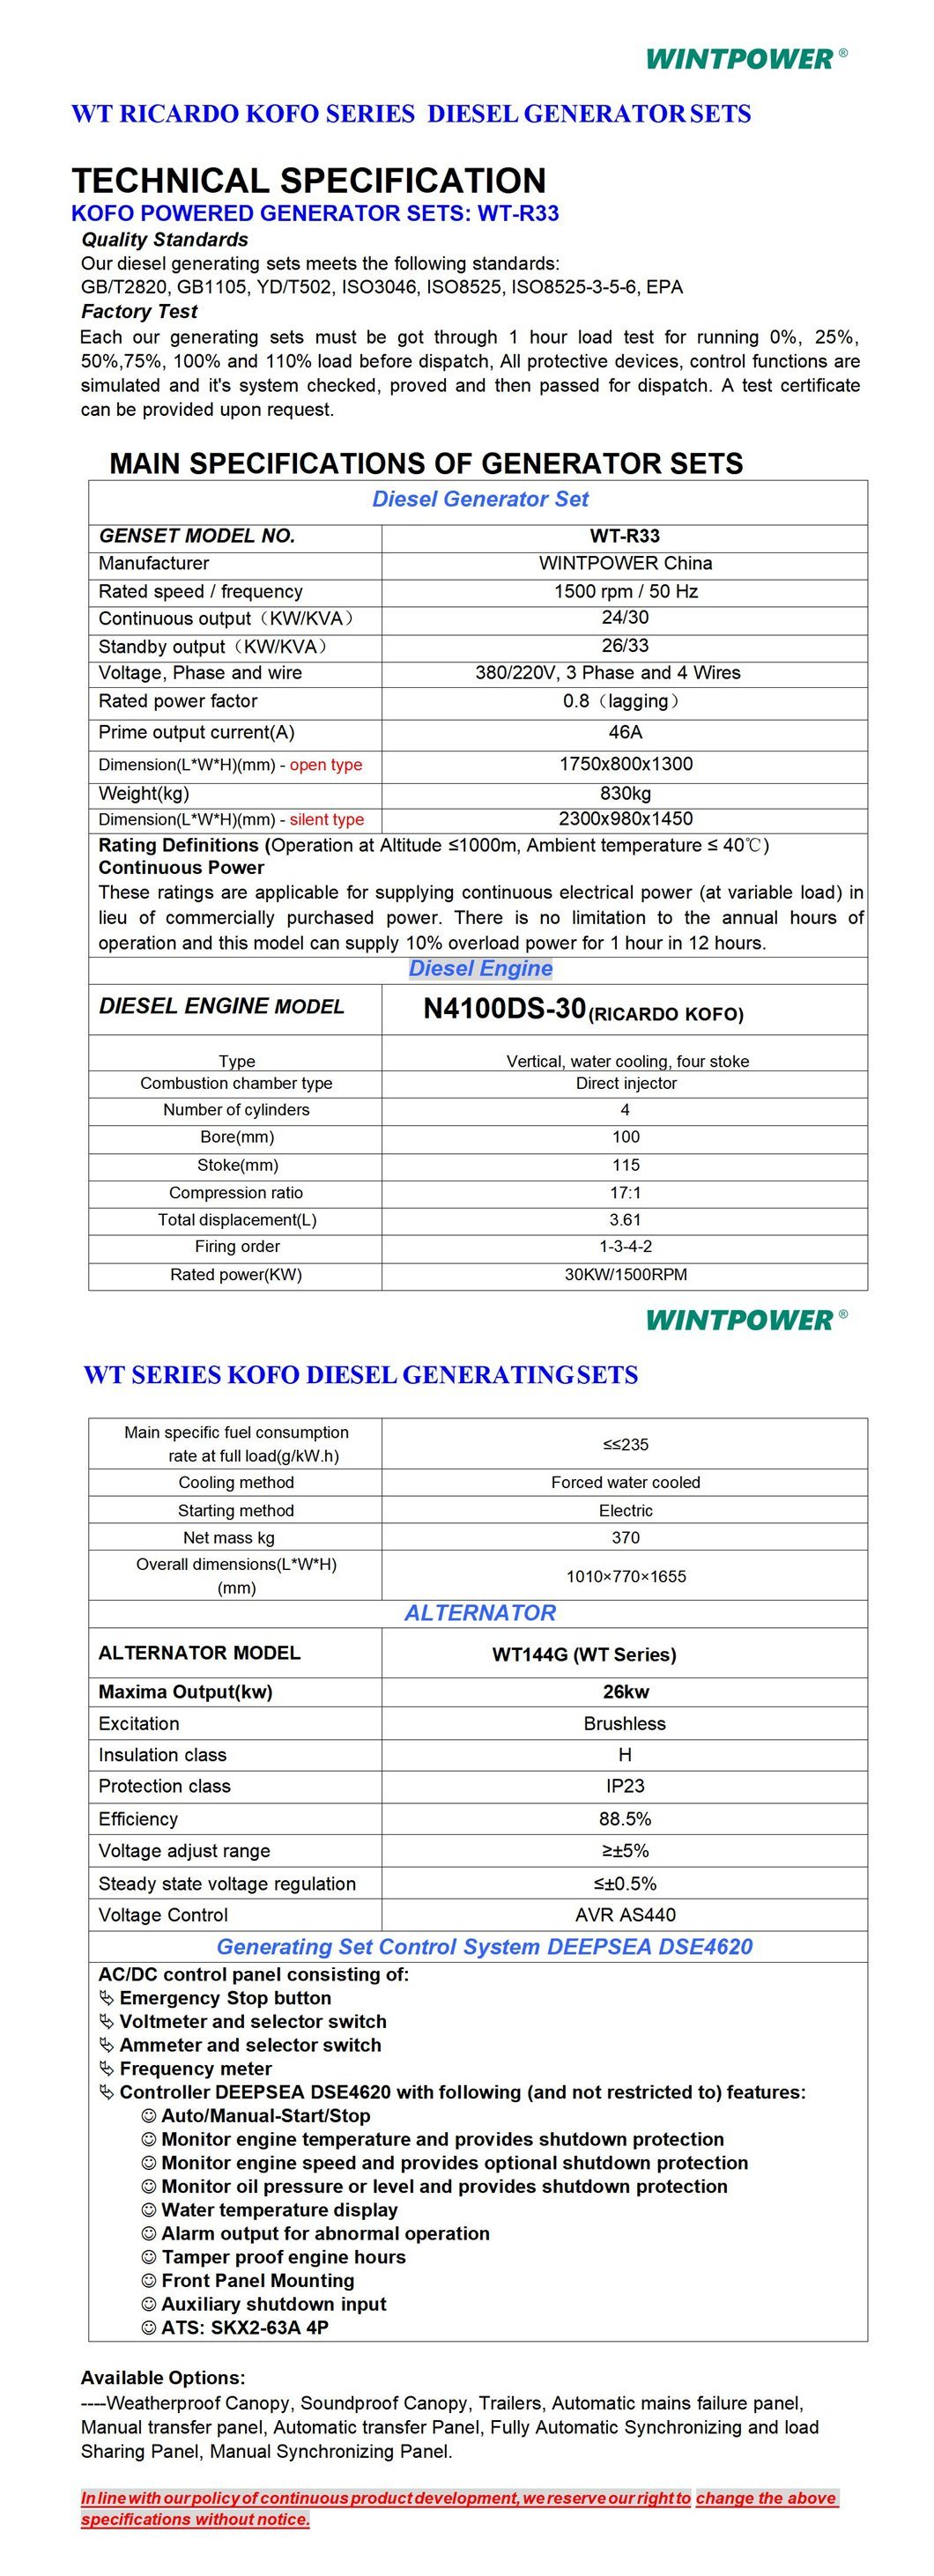 Weichai Kofo Ricardo moteur diesel groupe électrogène DG groupe électrogène 120kVA 4rt55-110d Type silencieux insonorisé 400/230V 380/220V 208/110V 440V 480V 600V 50Hz 60Hz